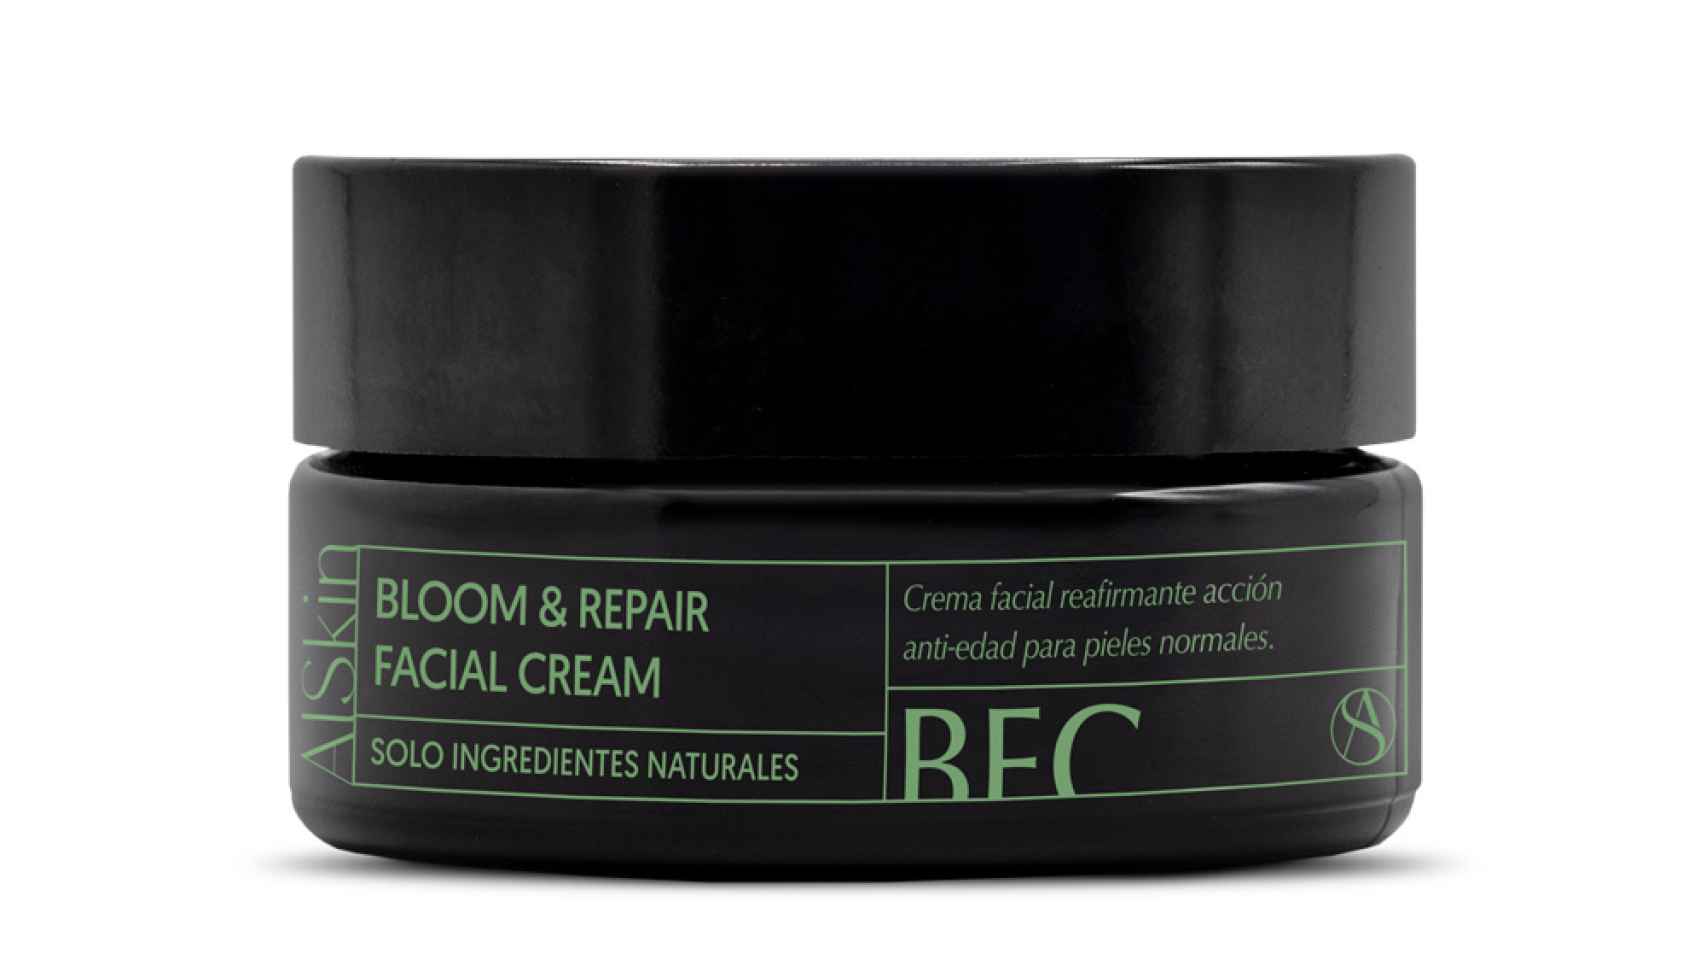 Bloom & Repair Facial Cream cuenta con una importante acción anti-edad.